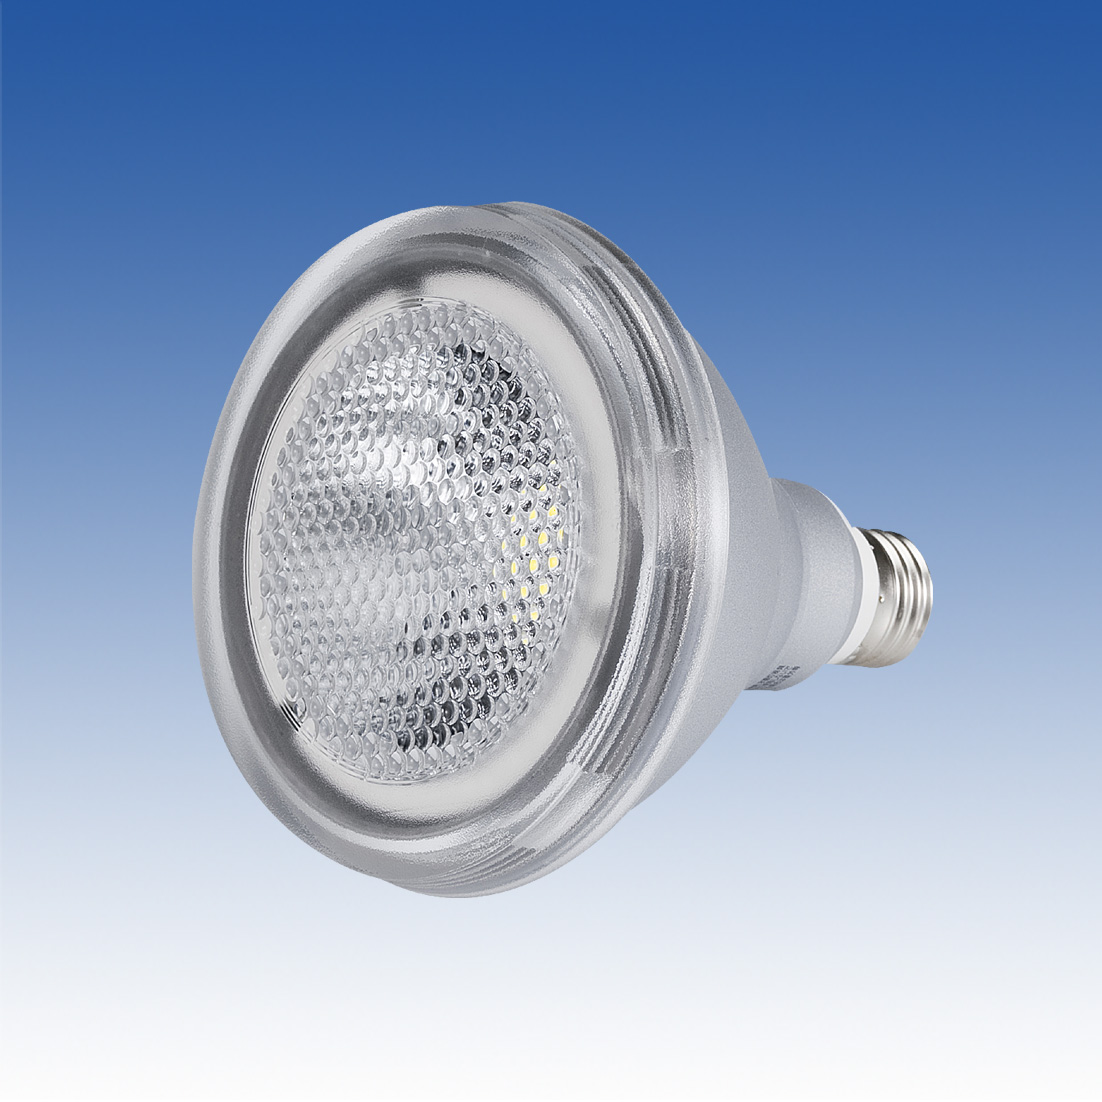 東芝ライテック製ビームランプ形LED 電球(電球色150W 相当)